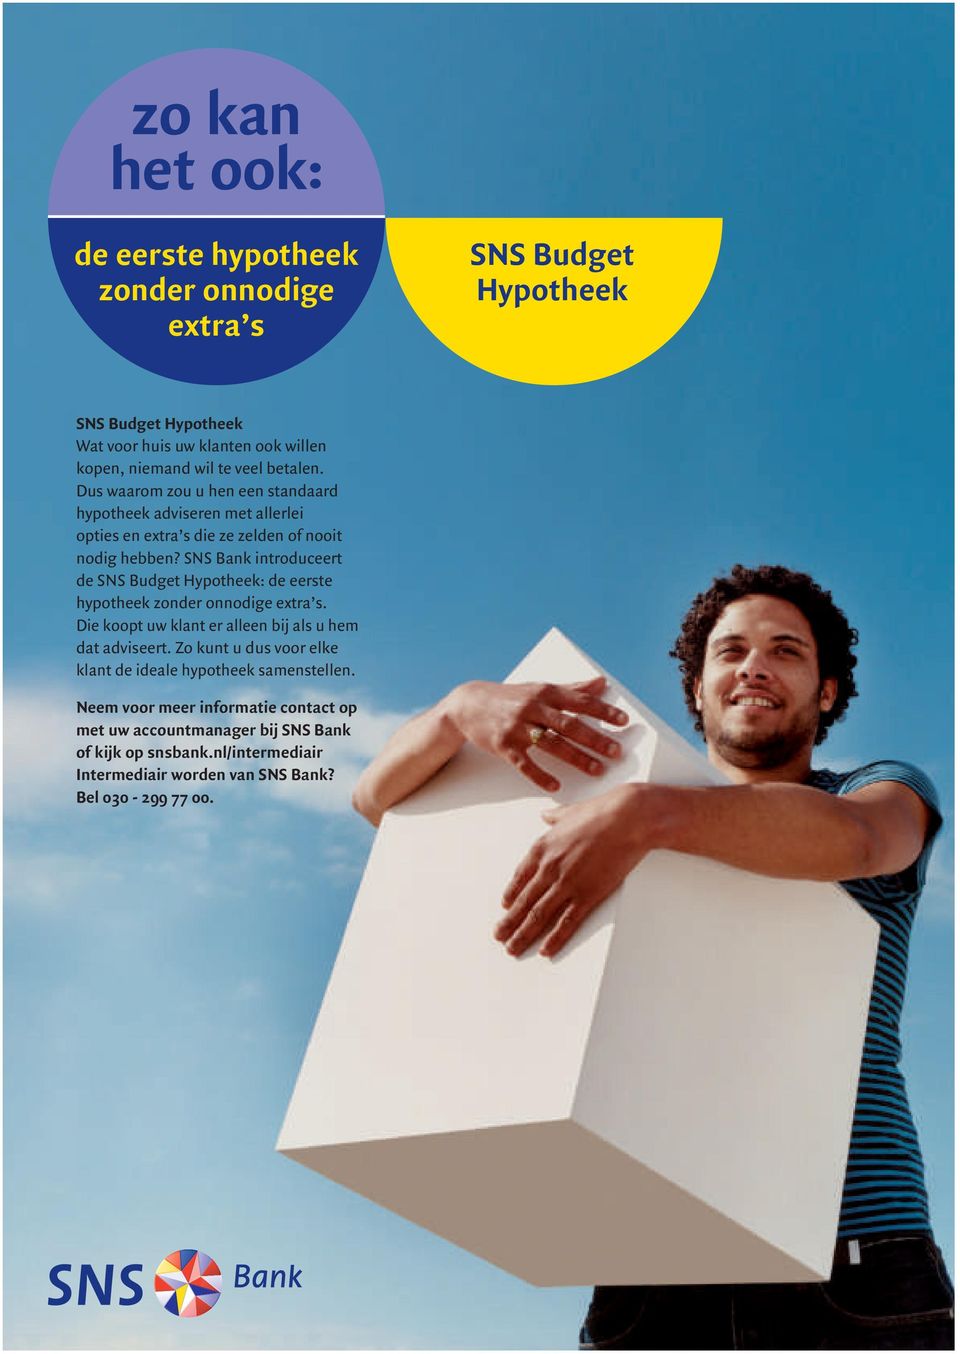 SNS Bank introduceert de SNS Budget Hypotheek: de eerste hypotheek zonder onnodige extra s. Die koopt uw klant er alleen bij als u hem dat adviseert.